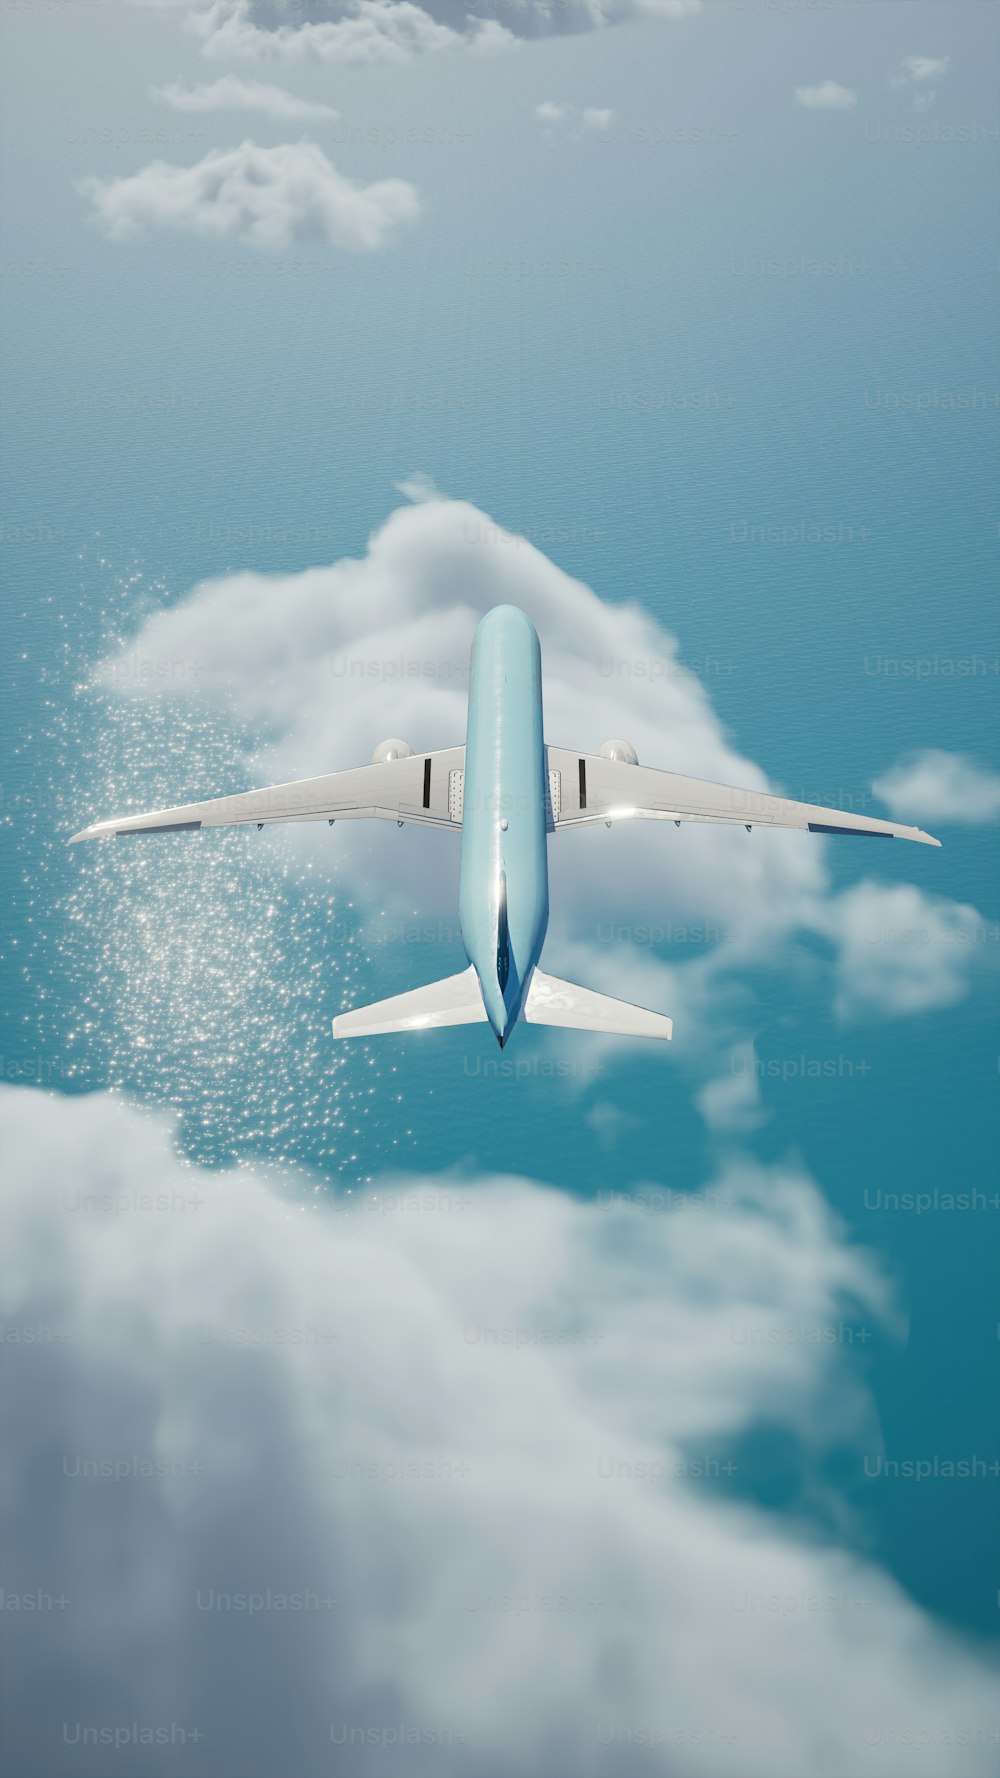 Ein blau-weißes Flugzeug fliegt am Himmel